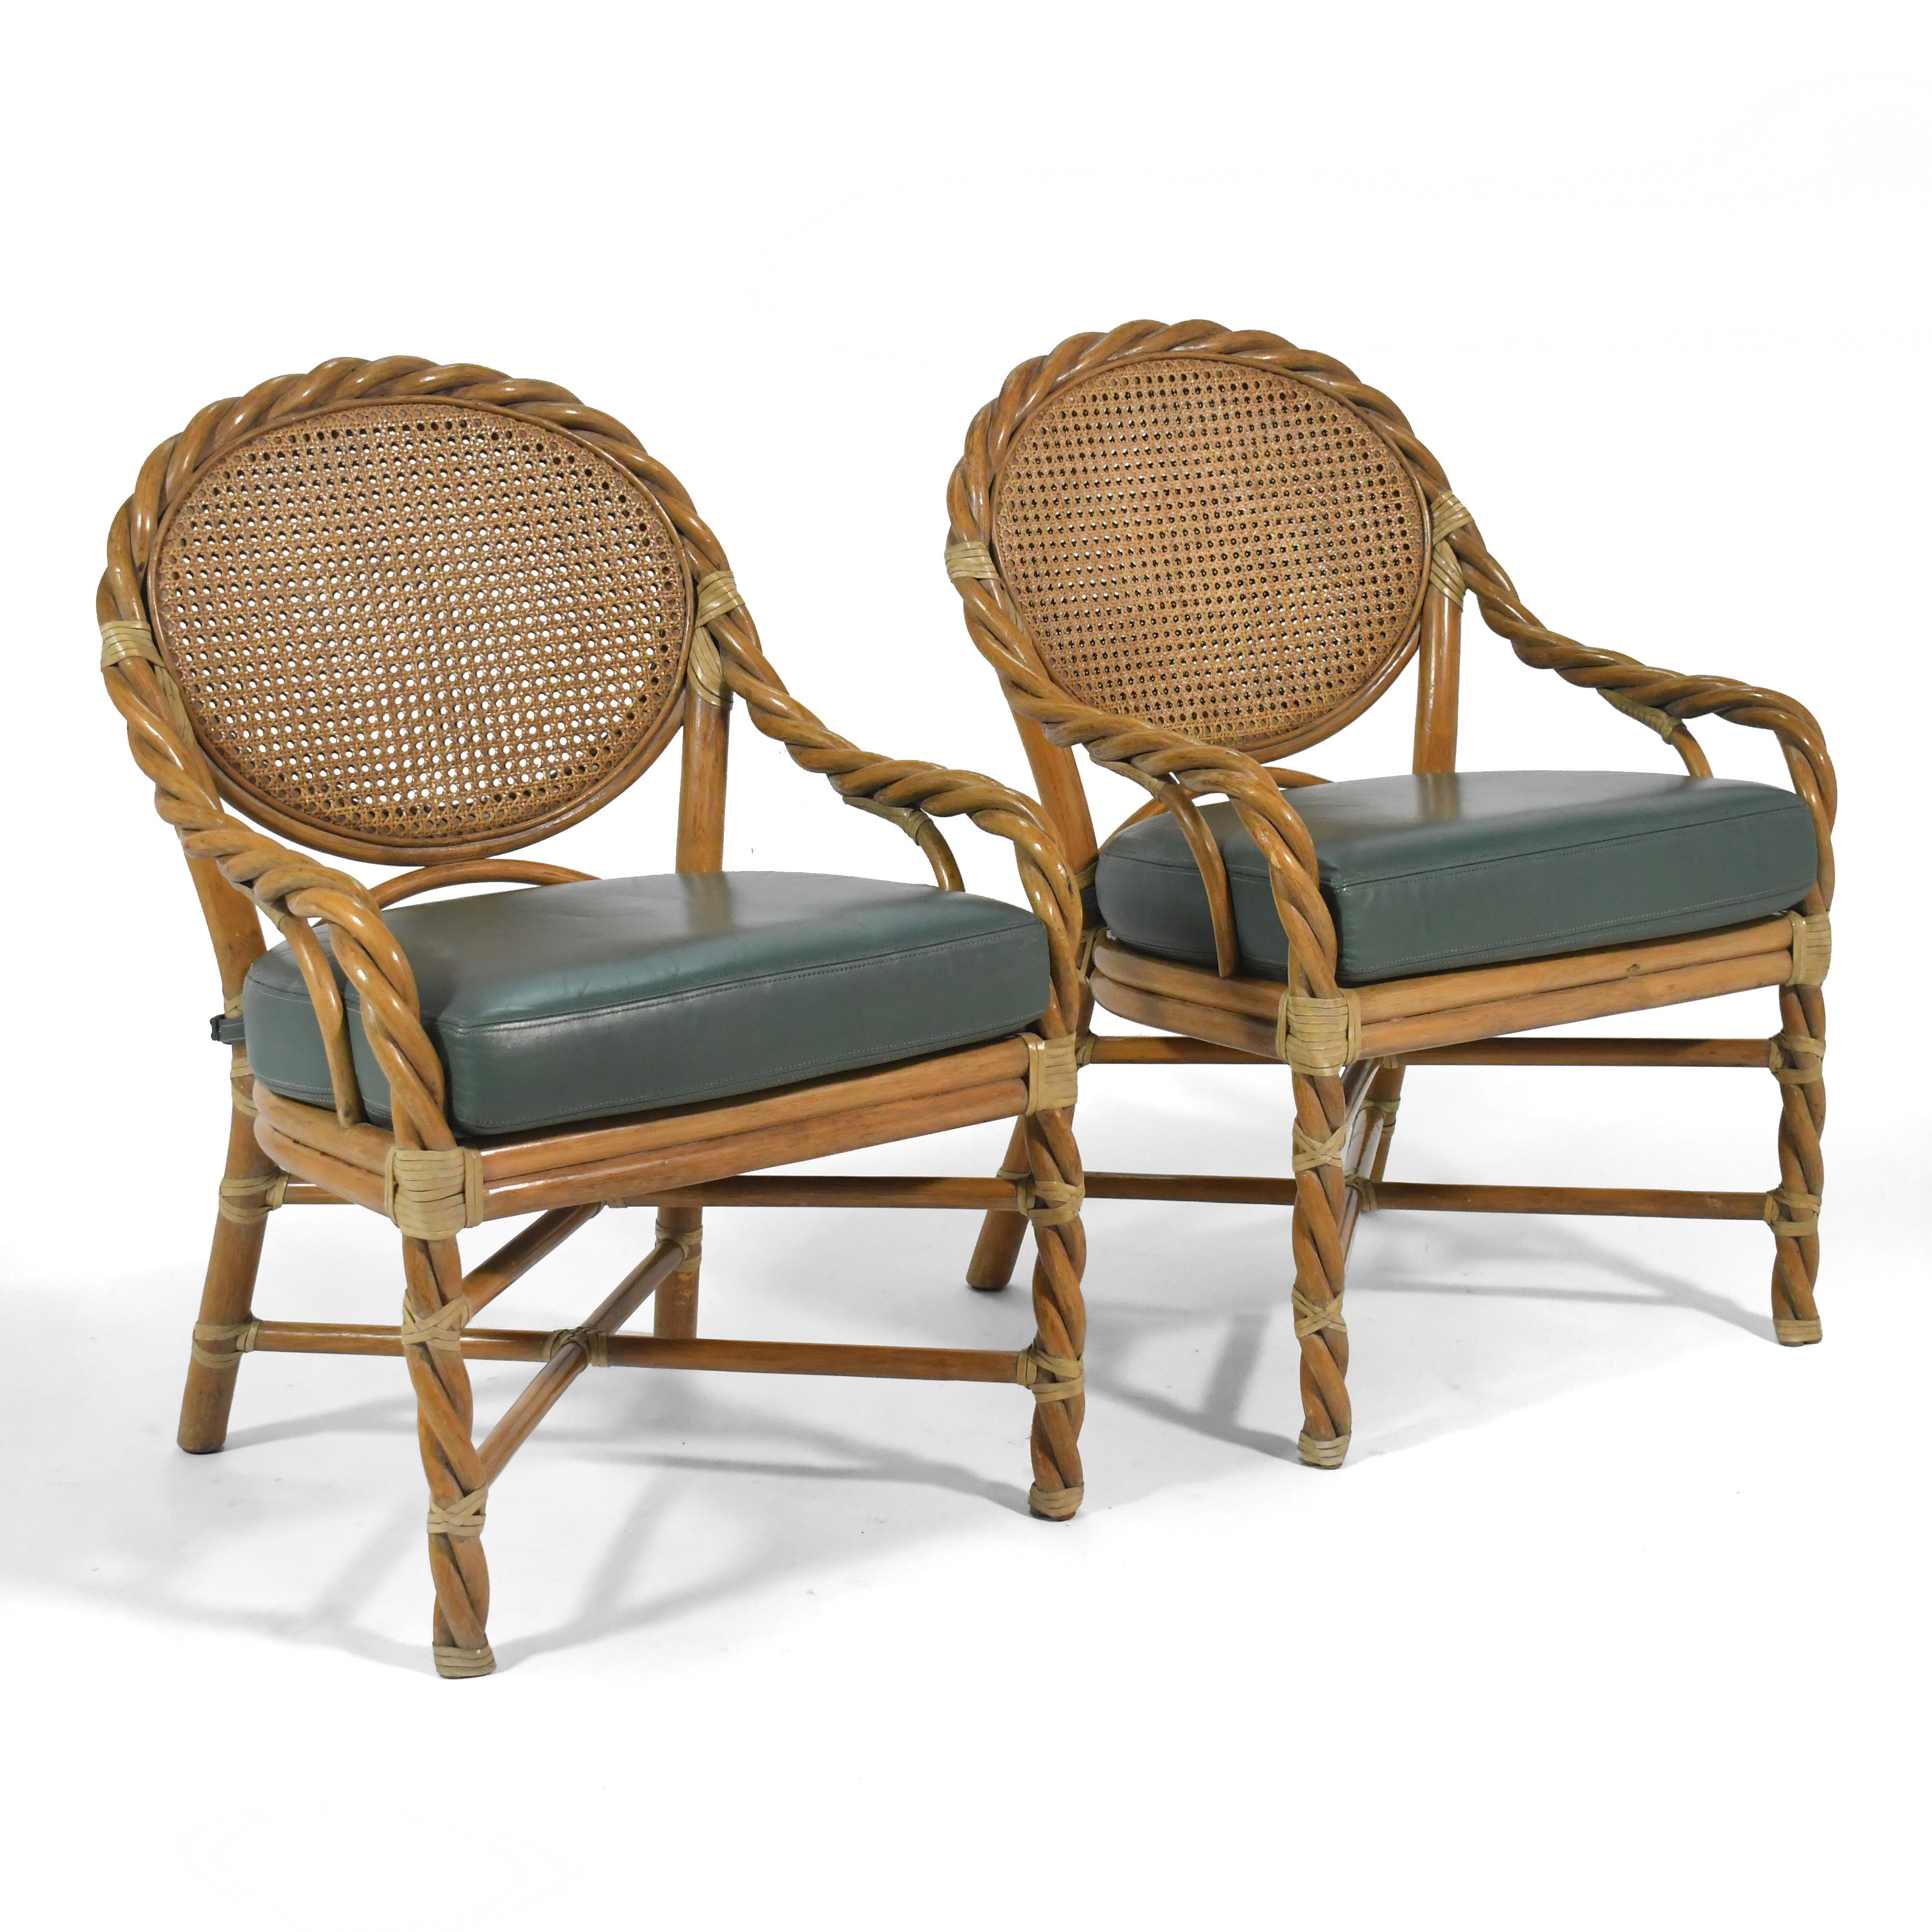 Cette magnifique paire de chaises longues de McGuire élève leur sensibilité sculpturale sophistiquée à un autre niveau. Les pieds avant sont constitués de bandes torsadées qui s'enroulent autour du dossier de l'assise de manière ondulante,